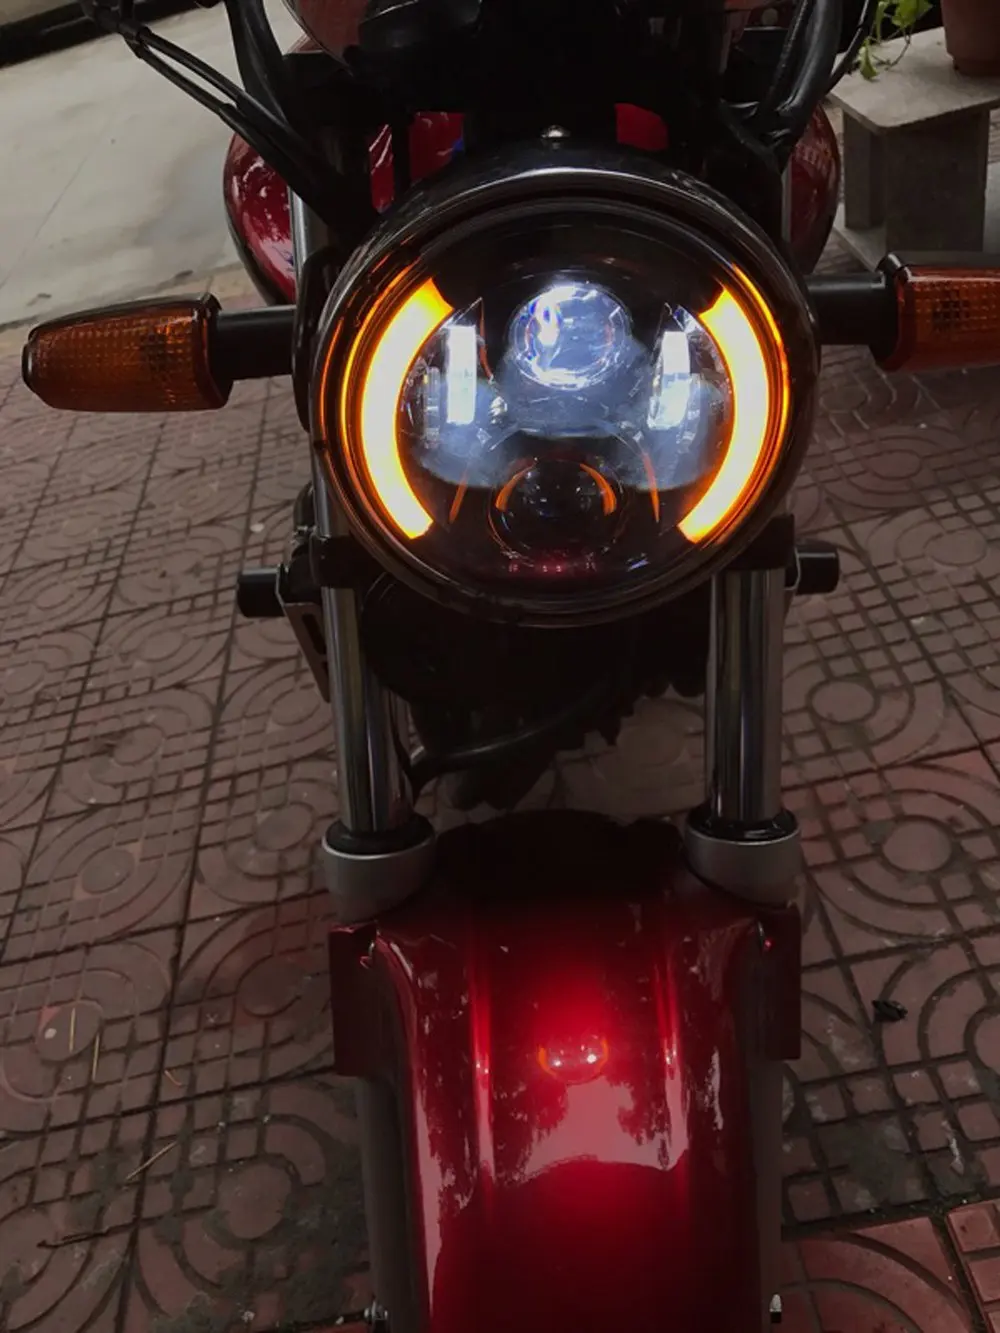 " светодиодный светильник на голову для мотоцикла 7 дюймов круглый светильник для вождения мотоцикла DRL сигнал поворота Halo Кольцо угол глаза налобный фонарь